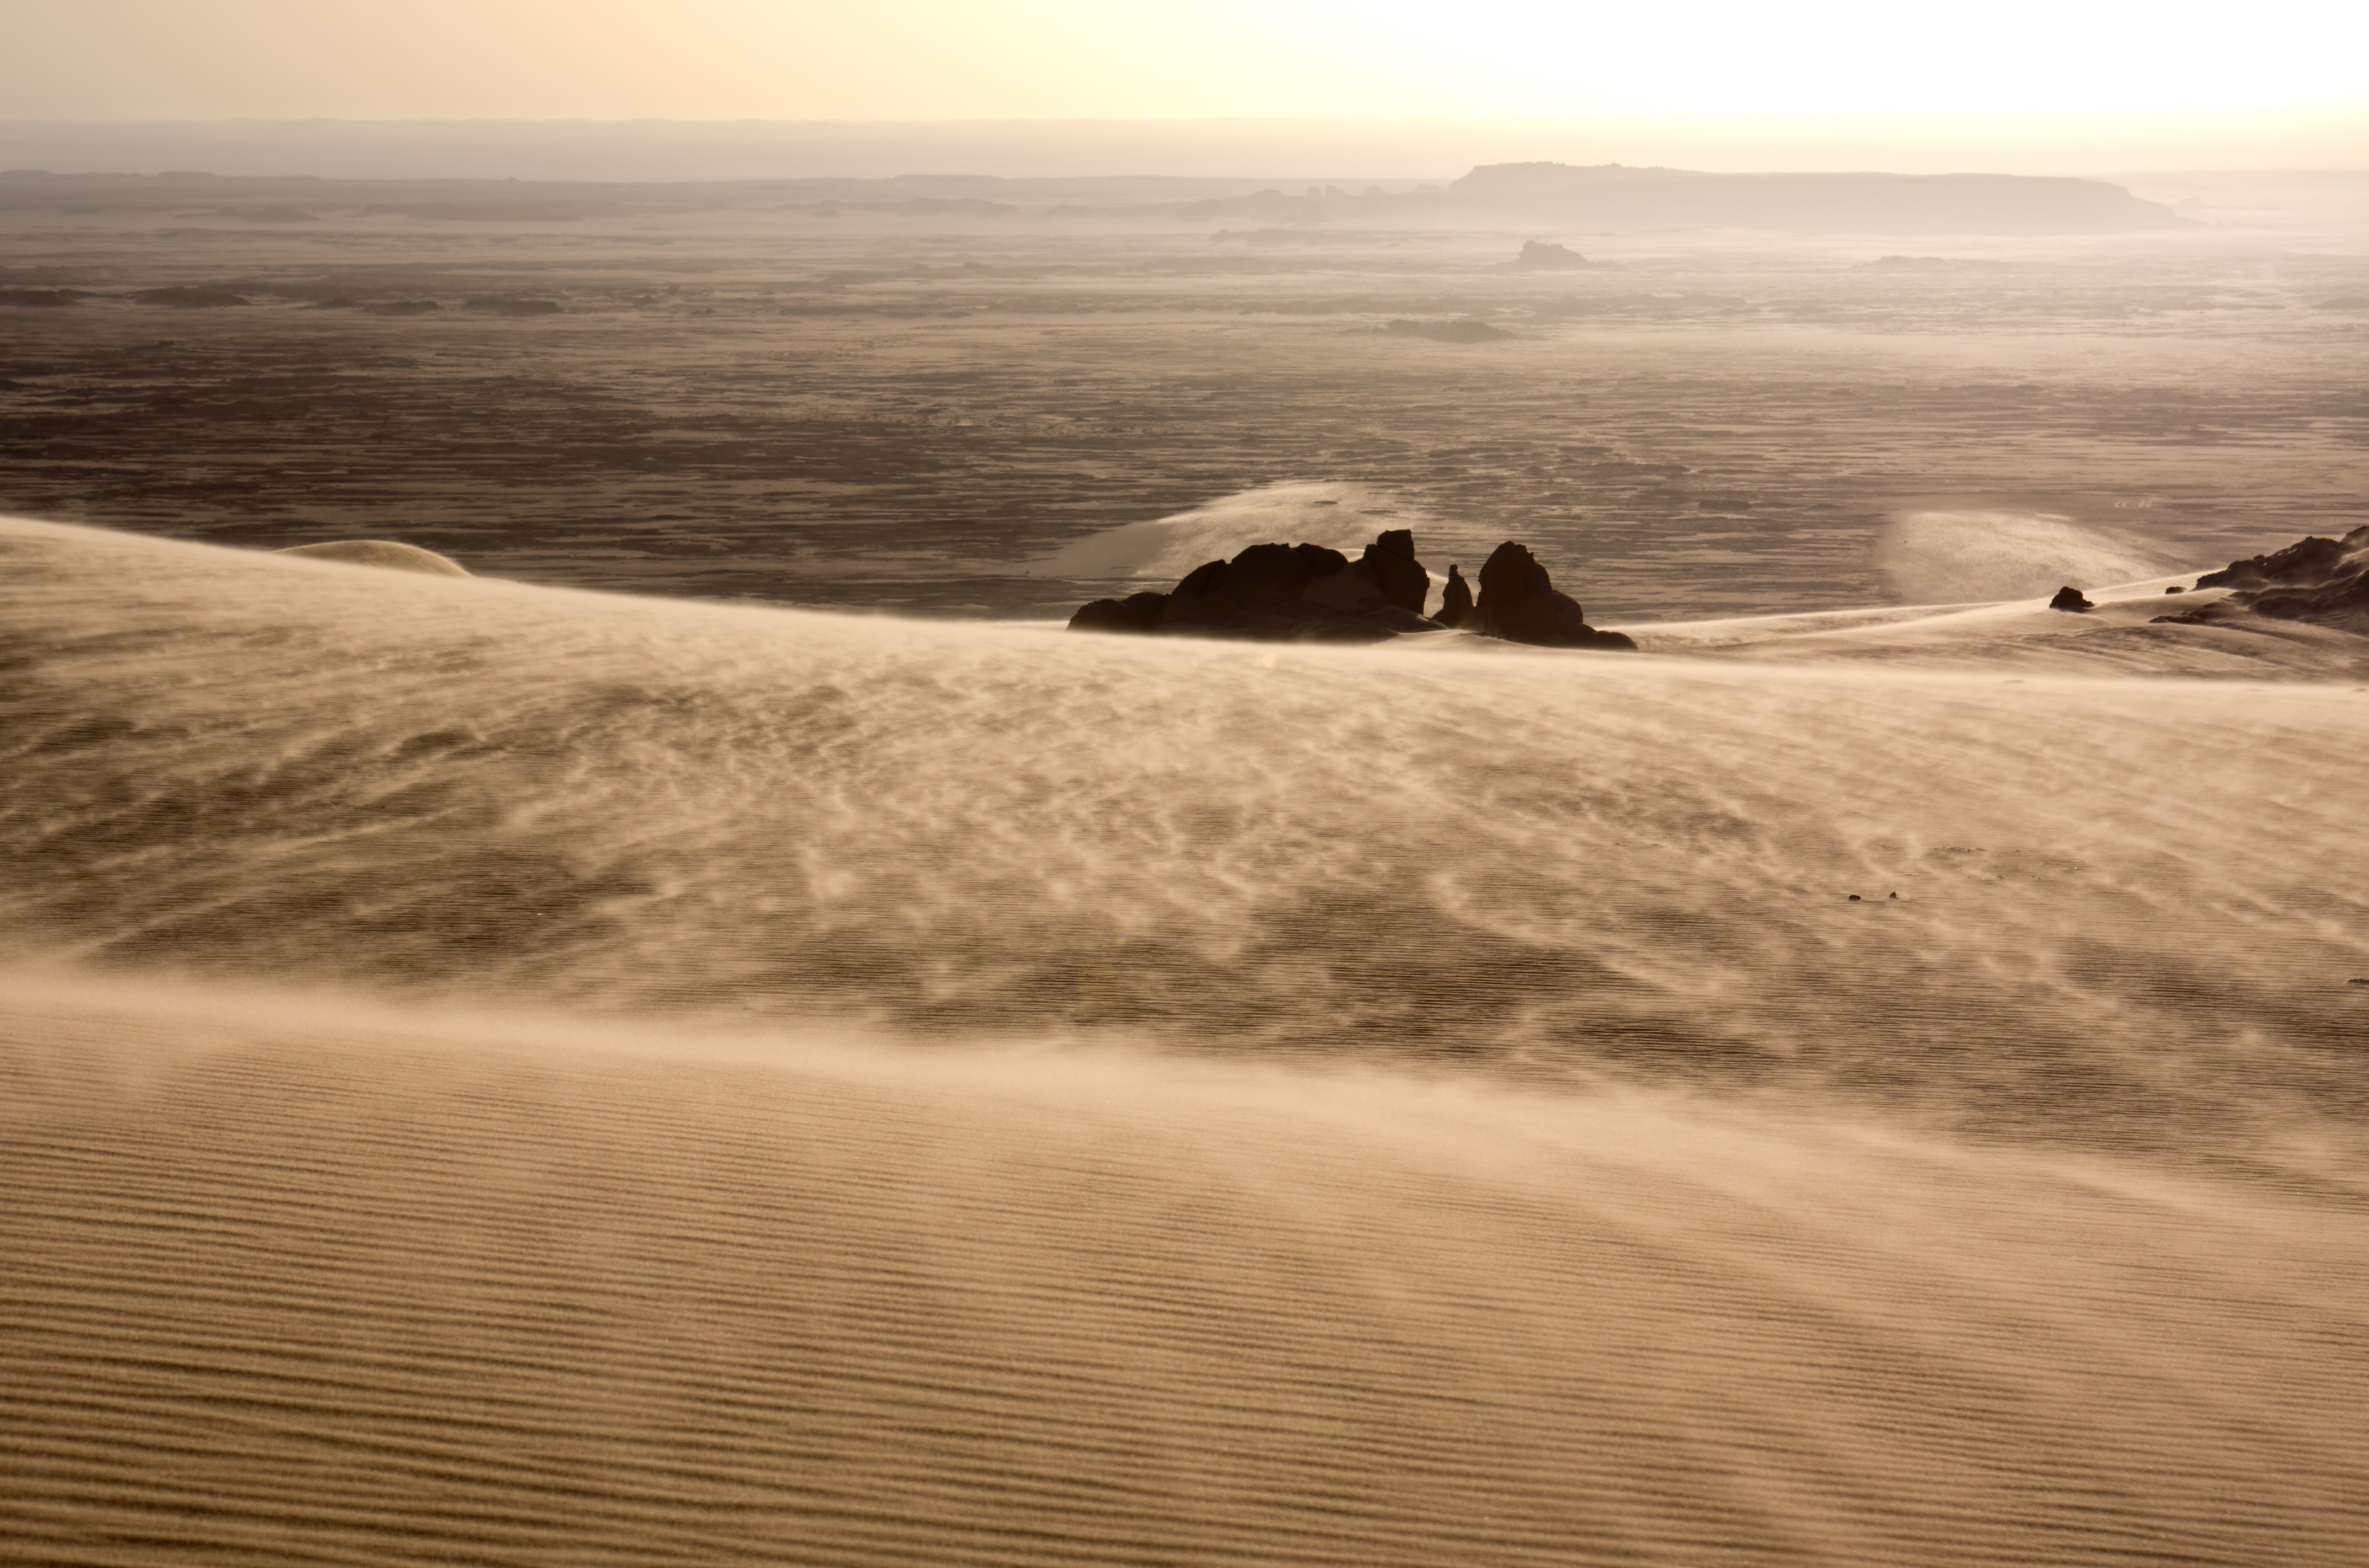 Africa Algeria Desert Dune Dust Landscape Sahara Sand Tassili N 039 Ajjer Wind 3852x2550